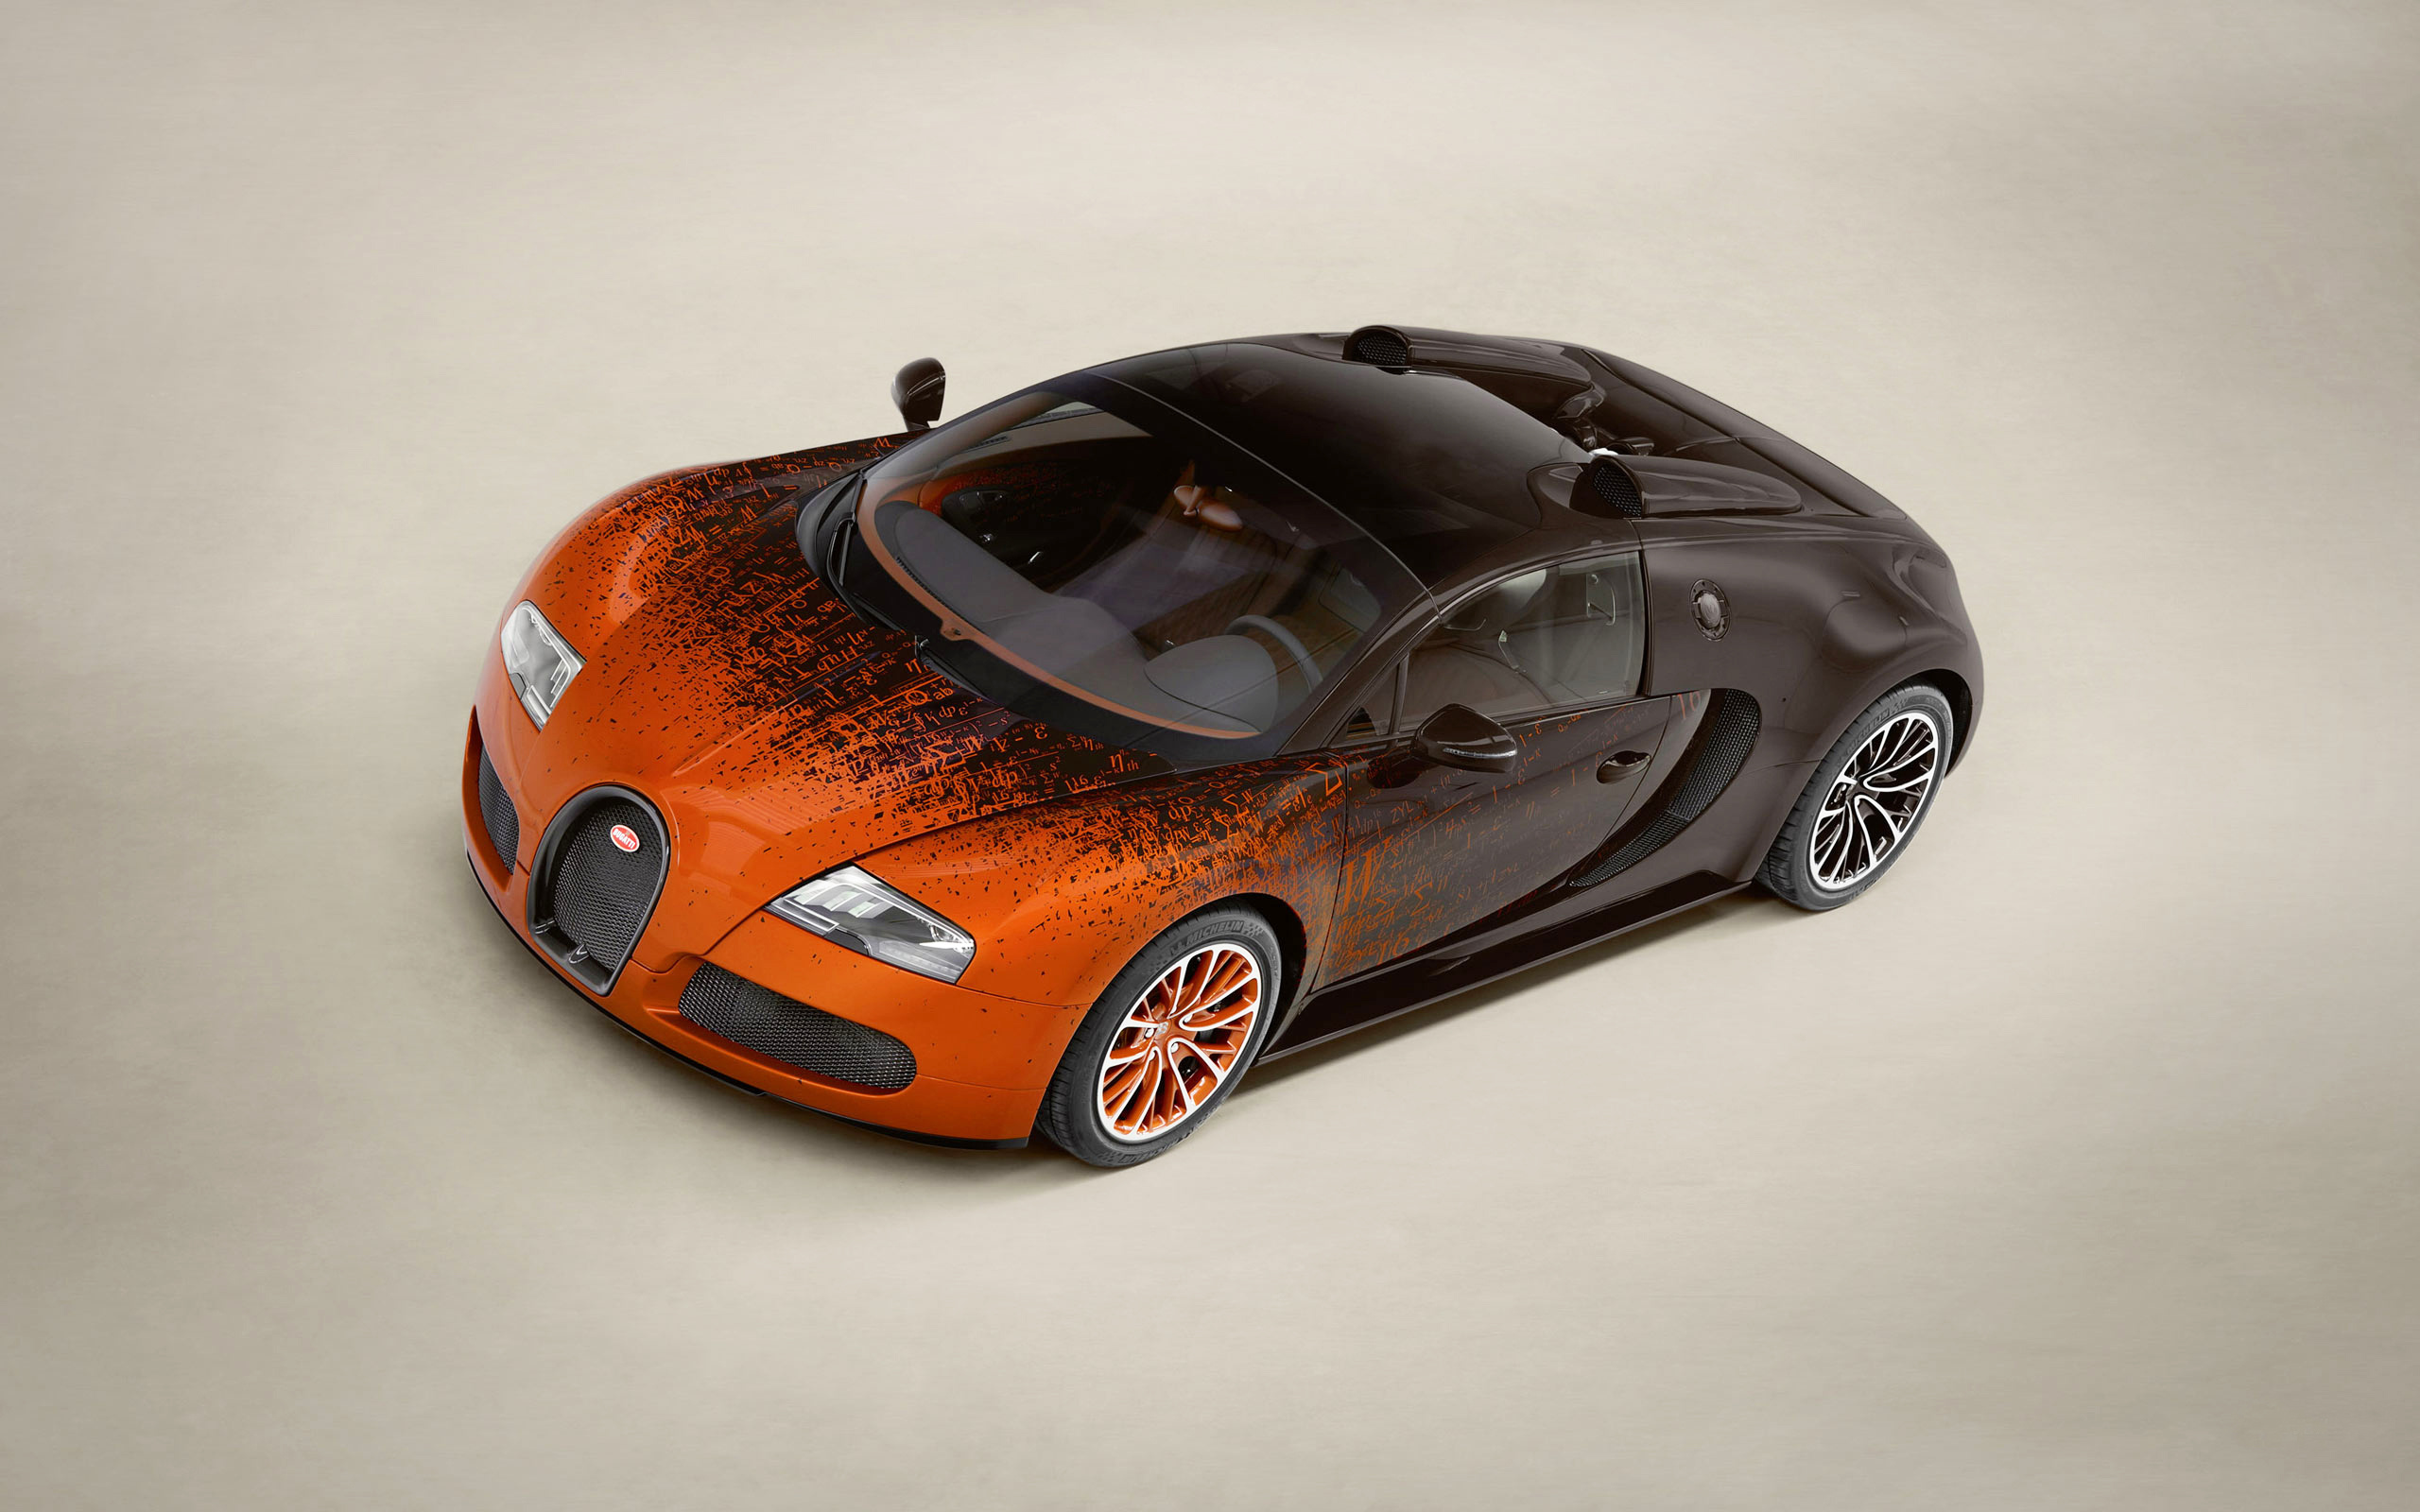 Descargar fondos de escritorio de Bugatti Veyron 16 4 Gran Deporte HD